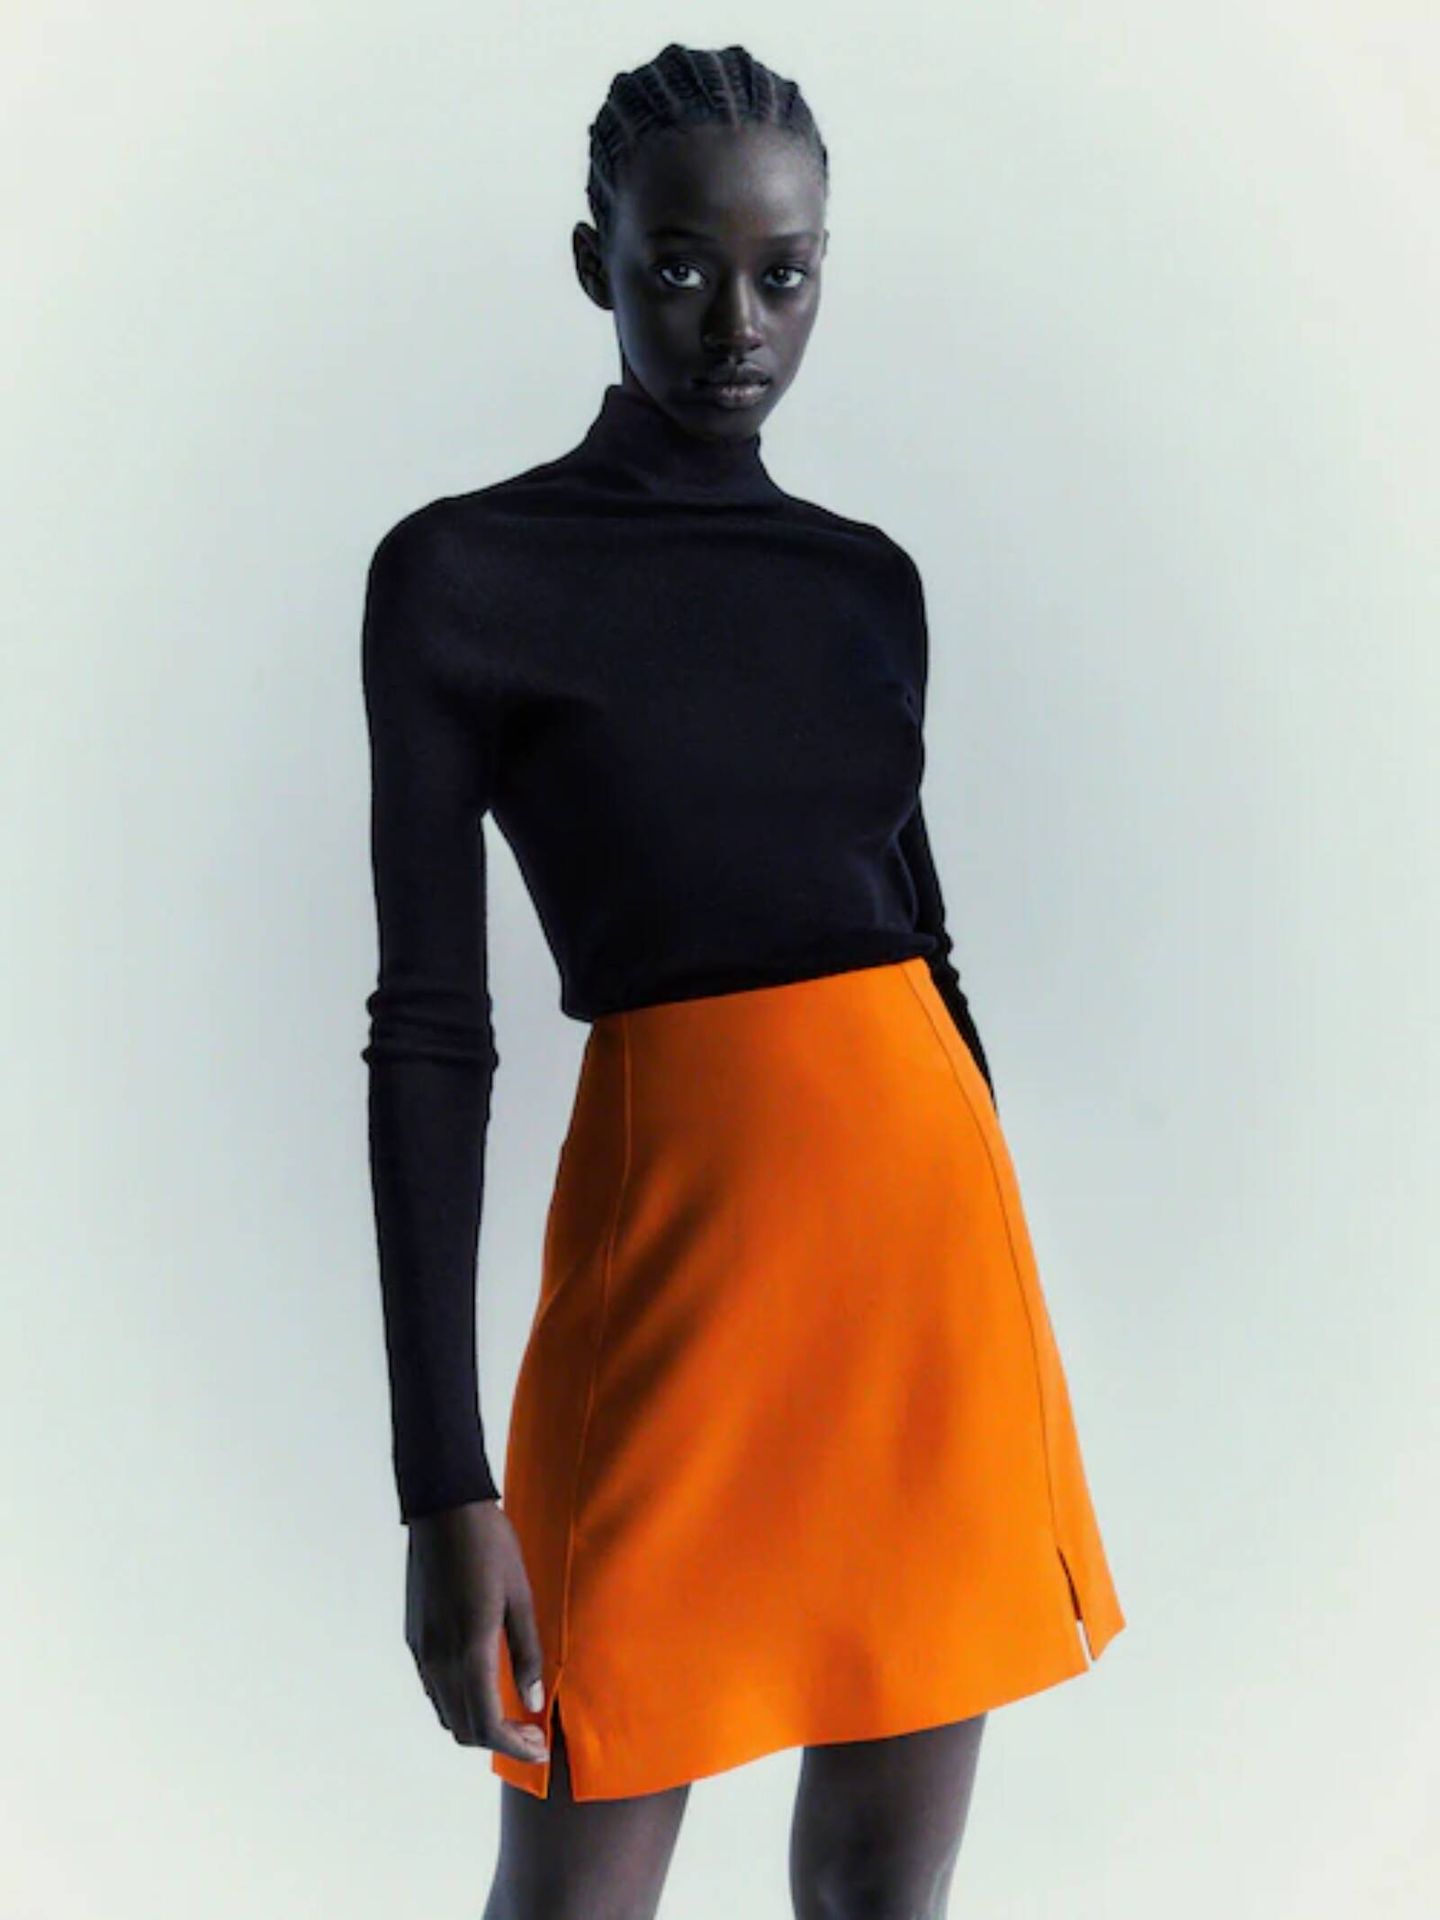 Súmate al color de moda con este minifalda de Massimo Dutti. (Cortesía)